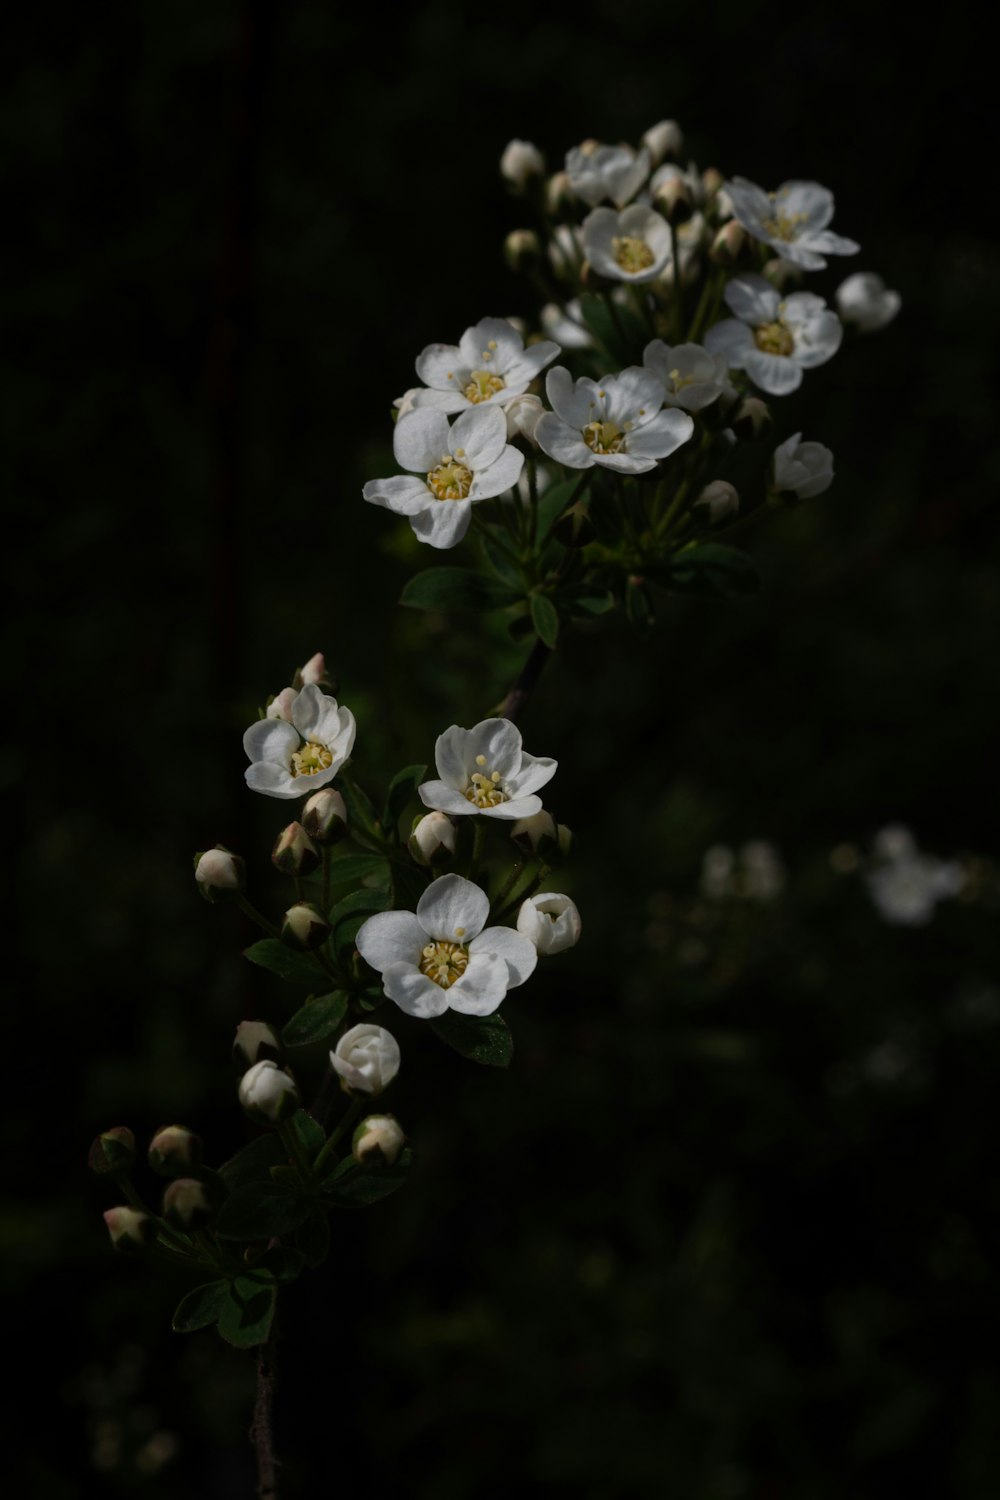 緑の葉を持つ白い花の束